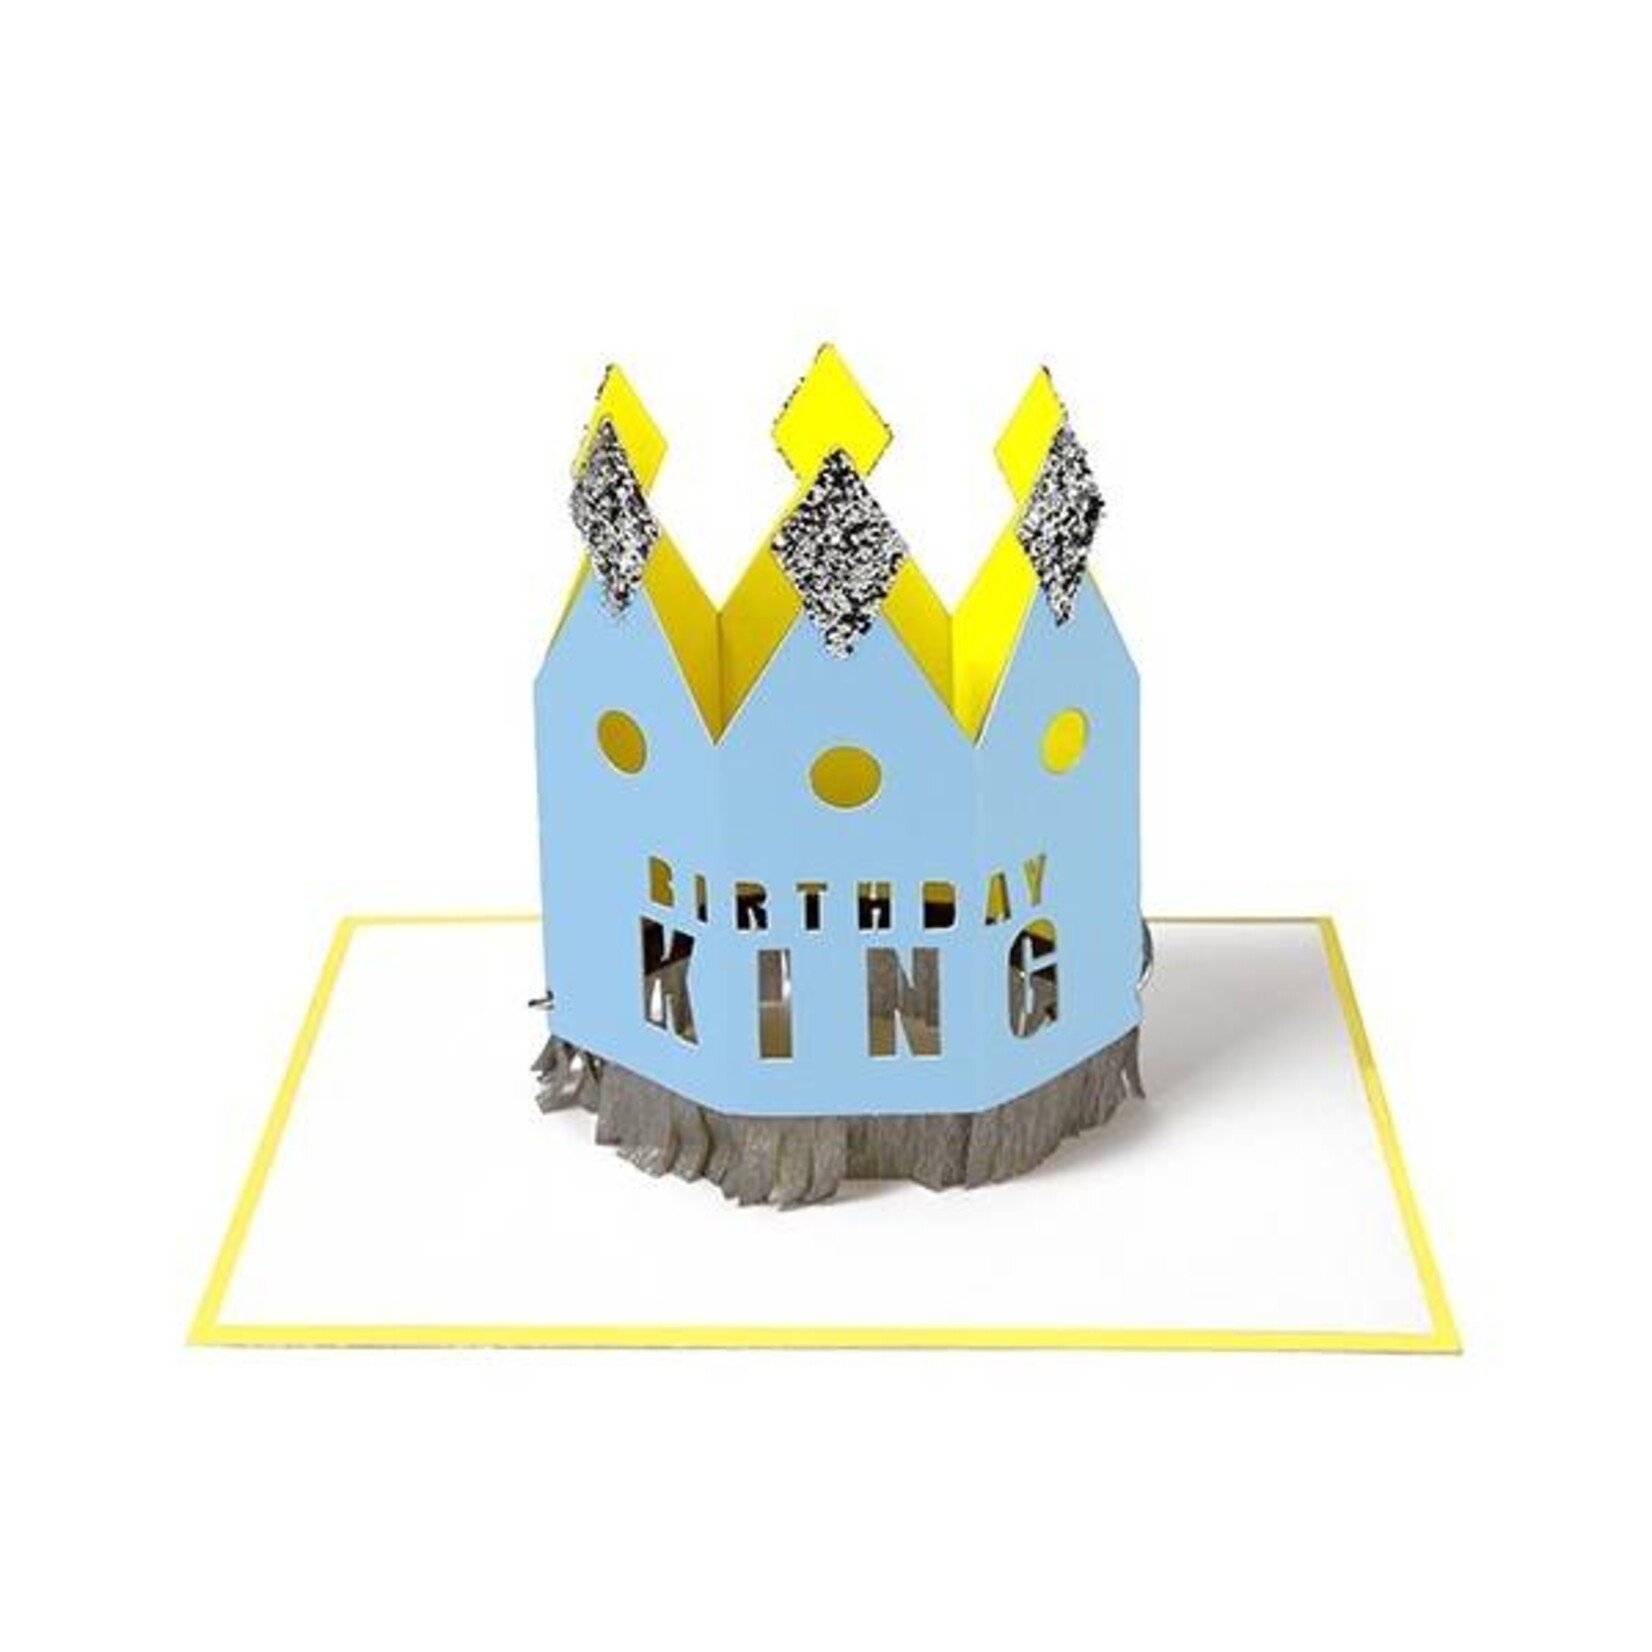 MERIMERI "Birthday King" kaart met kroon